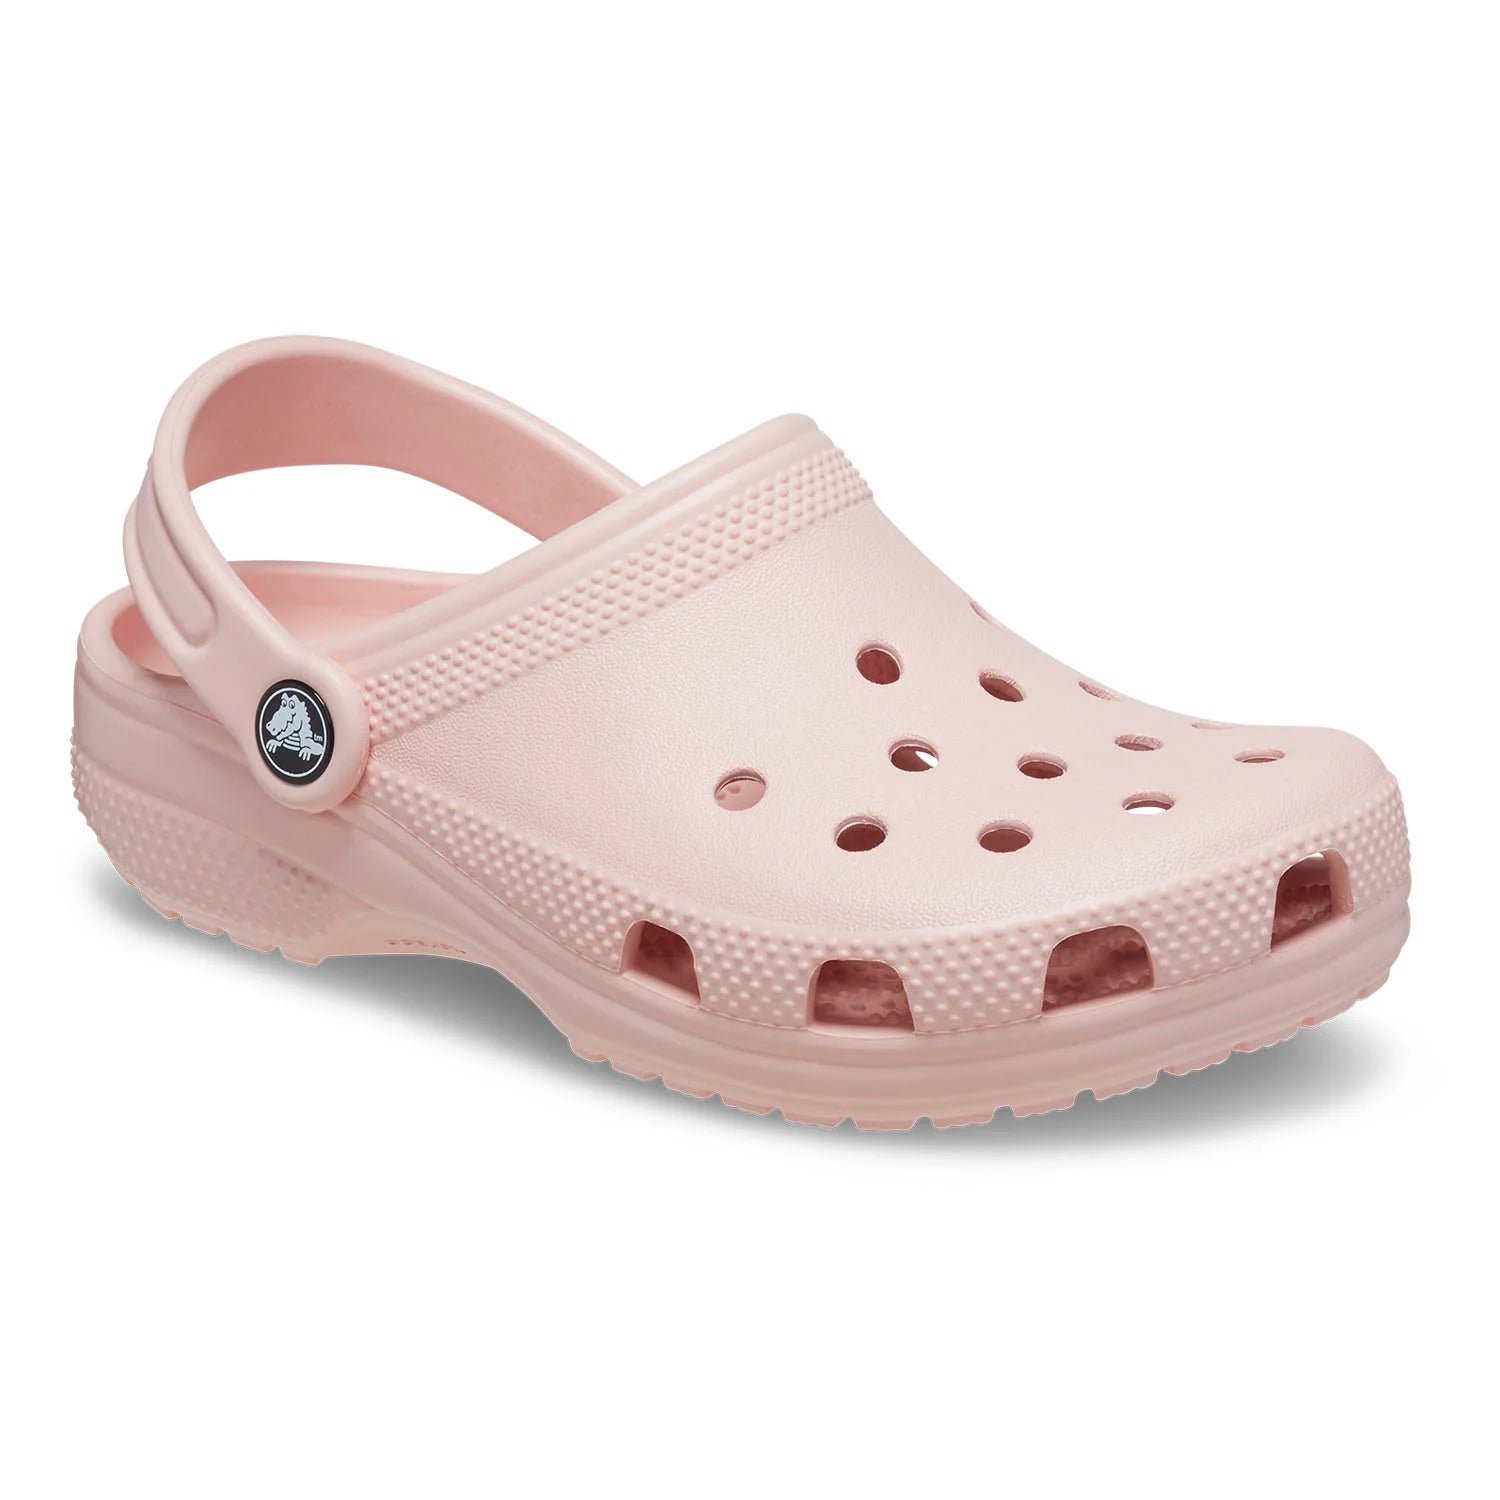 Crocs Unisex Classic Clog Sandal